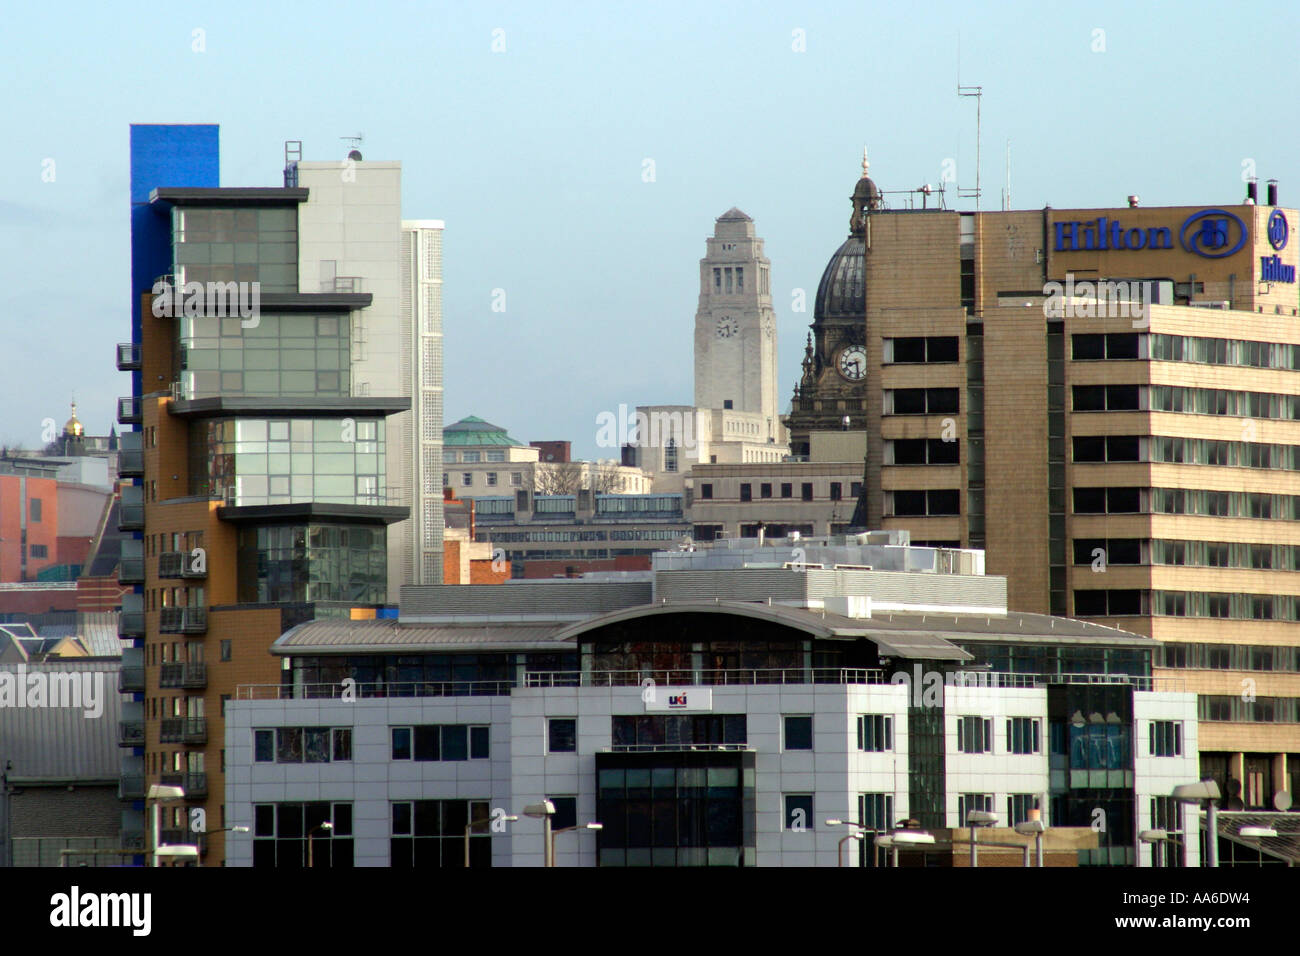 Toits de Leeds Dewsbury Road Towers de Leeds Hown Hall et University clairement visibles Banque D'Images